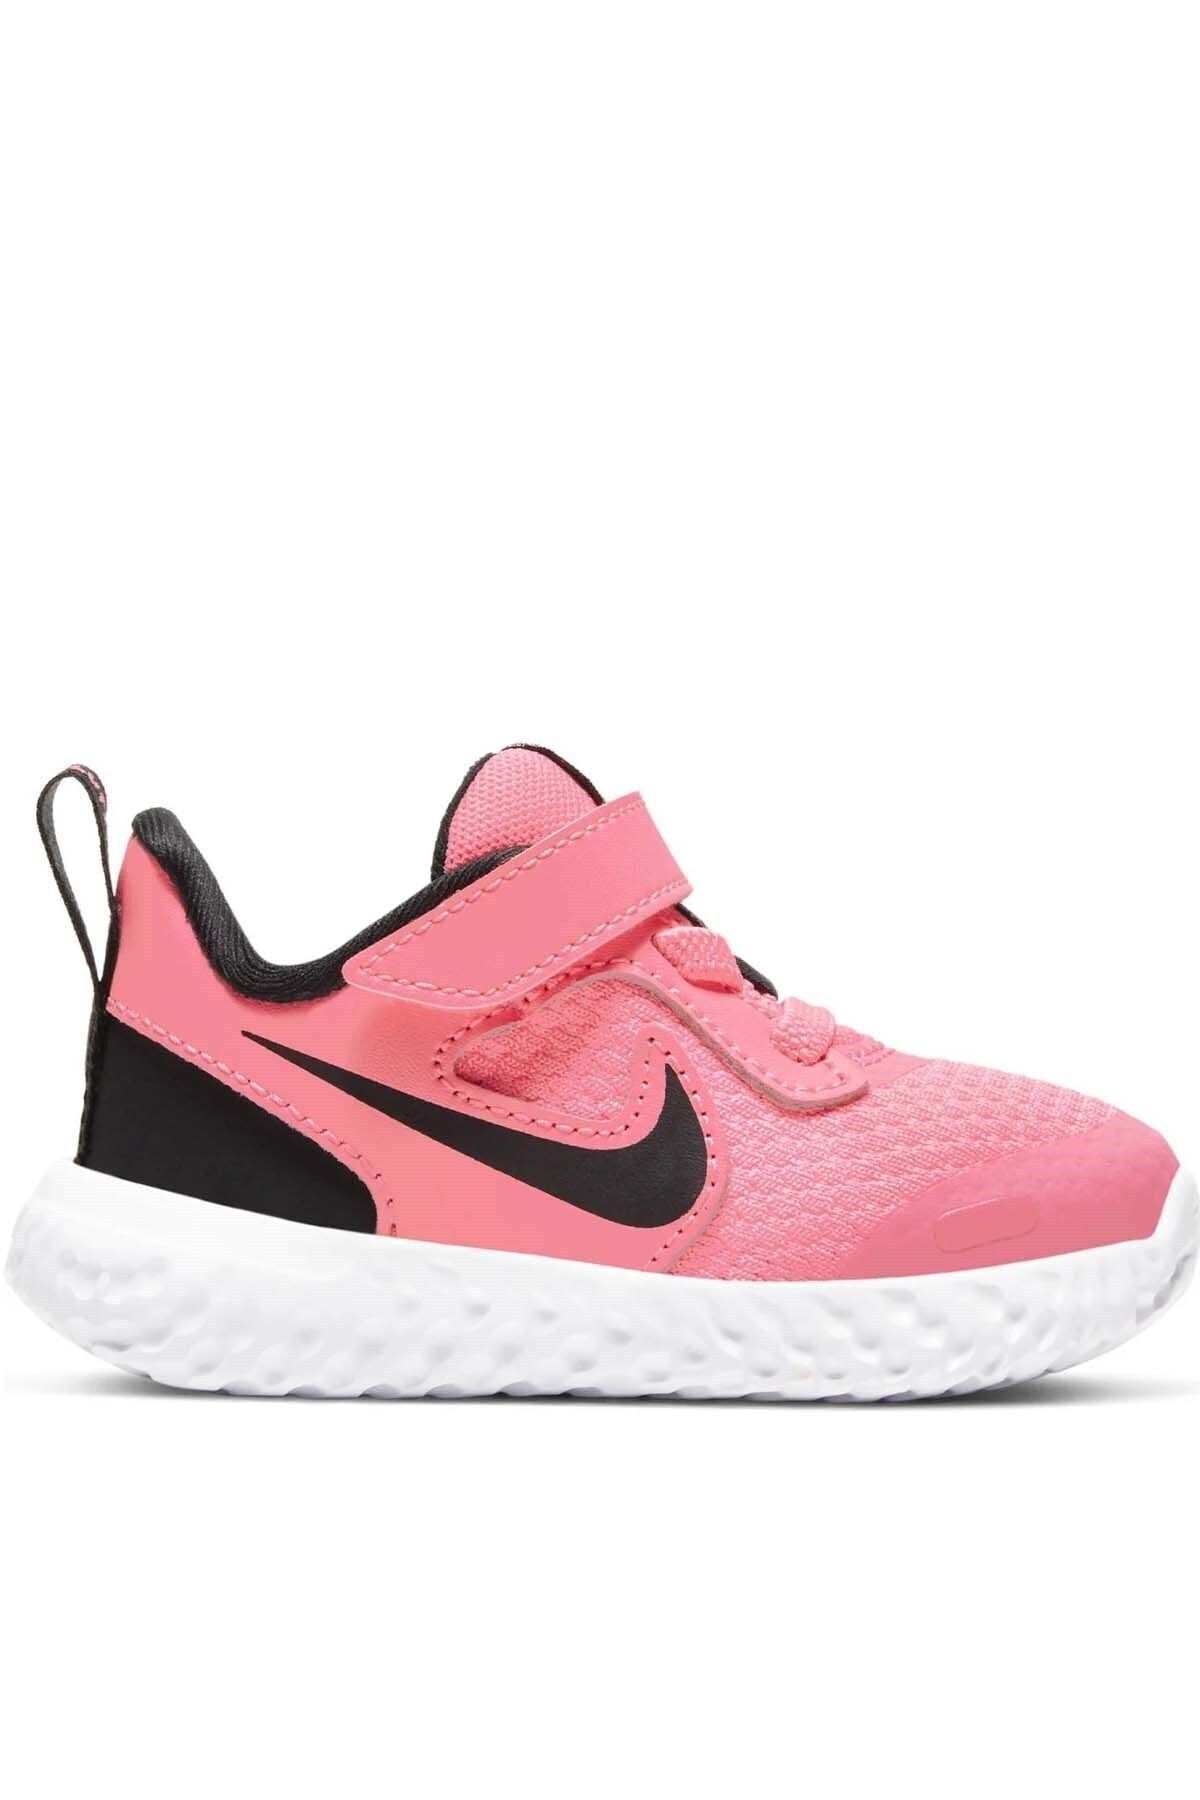 Nike Revolutıon 5 (Tdv) Çocuk Yürüyüş Koşu Ayakkabı Bq5673-602-pembe